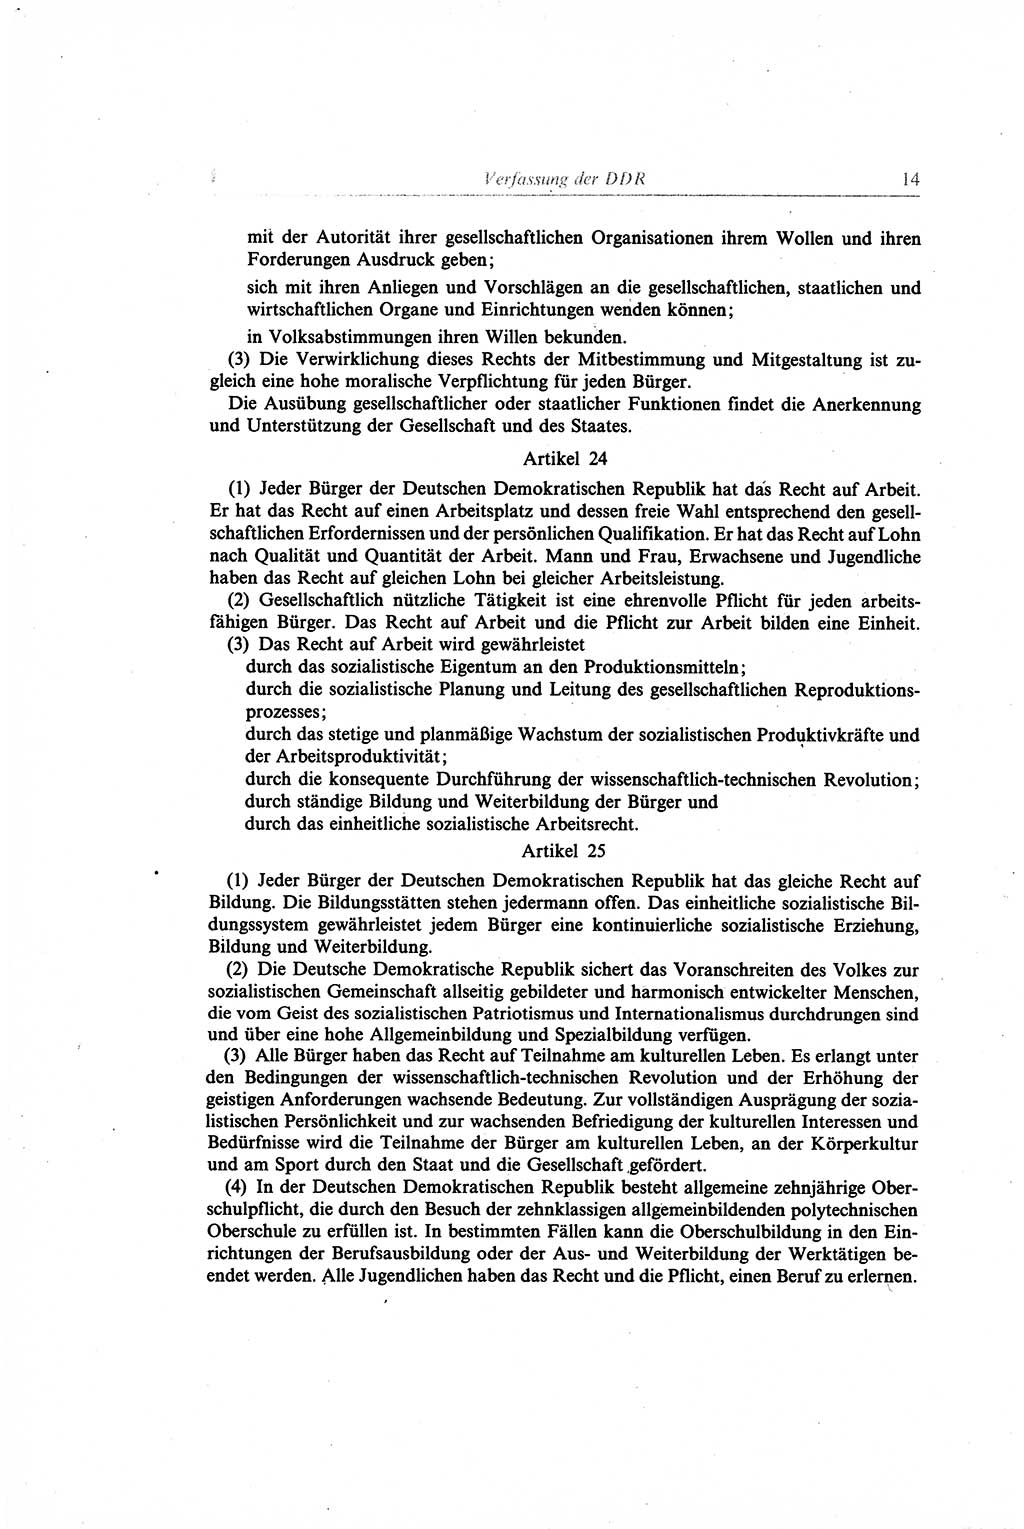 Gesetzbuch der Arbeit (GBA) und andere ausgewählte rechtliche Bestimmungen [Deutsche Demokratische Republik (DDR)] 1968, Seite 14 (GBA DDR 1968, S. 14)